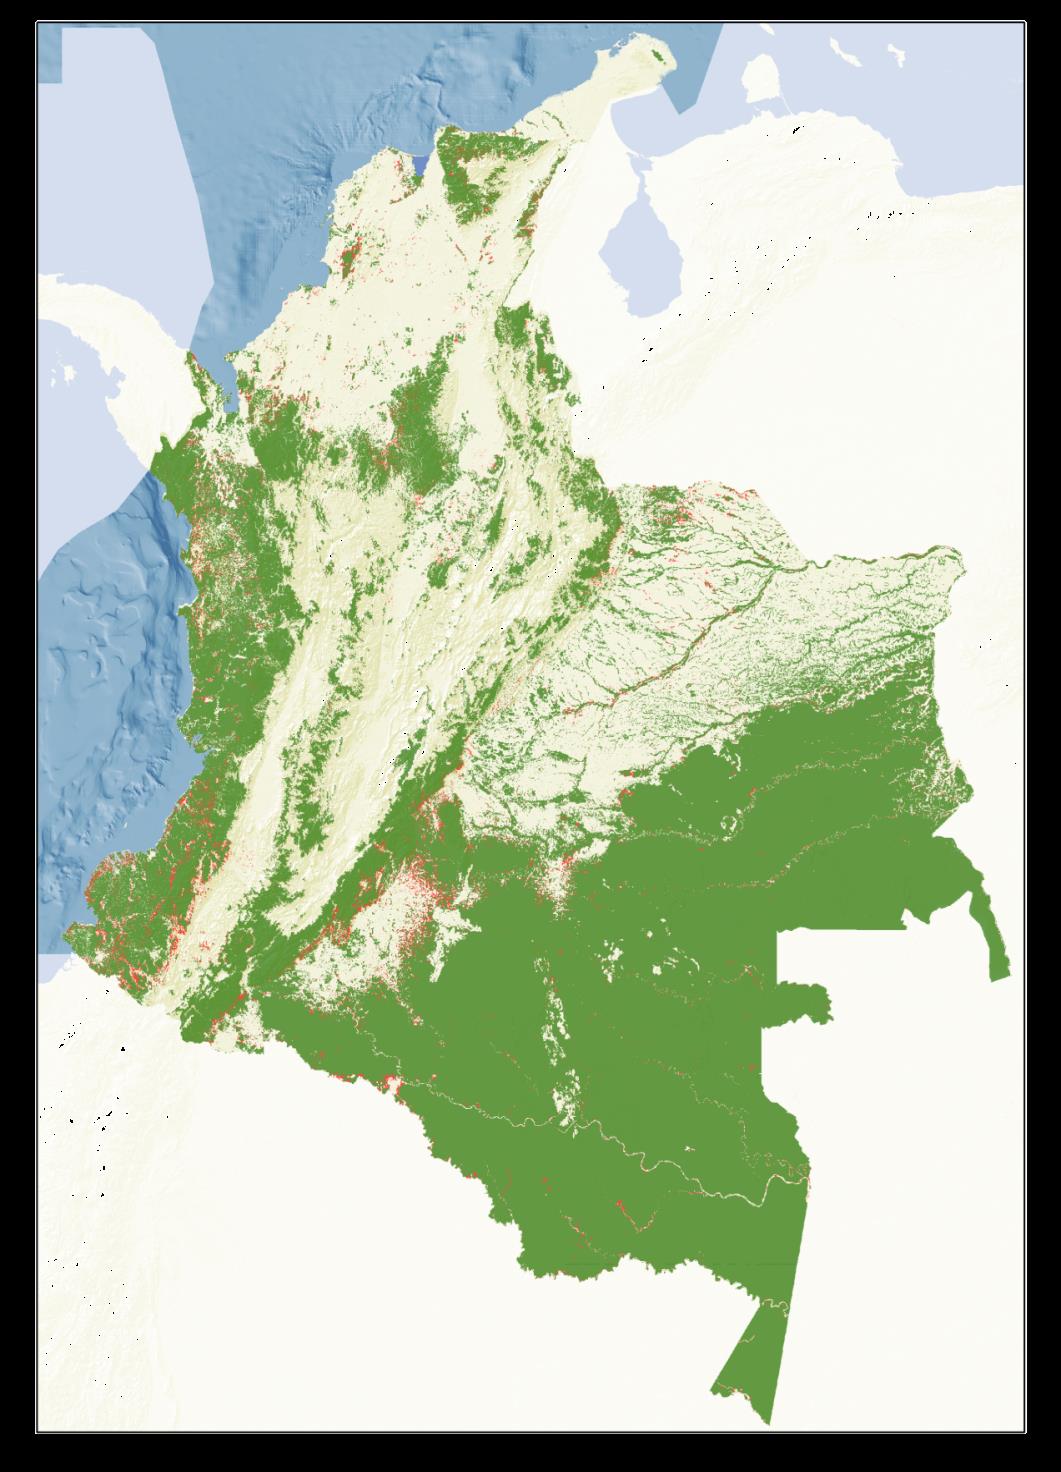 férreas Principales Puertos Marítimos Áreas de Hidrocarburos (ANH) Región Natural Área deforestada a 2013 (ha) Caribe 12.398 Andina 26.027 Amazónica 68.833 Orinoquía 8.746 Pacífico 5.